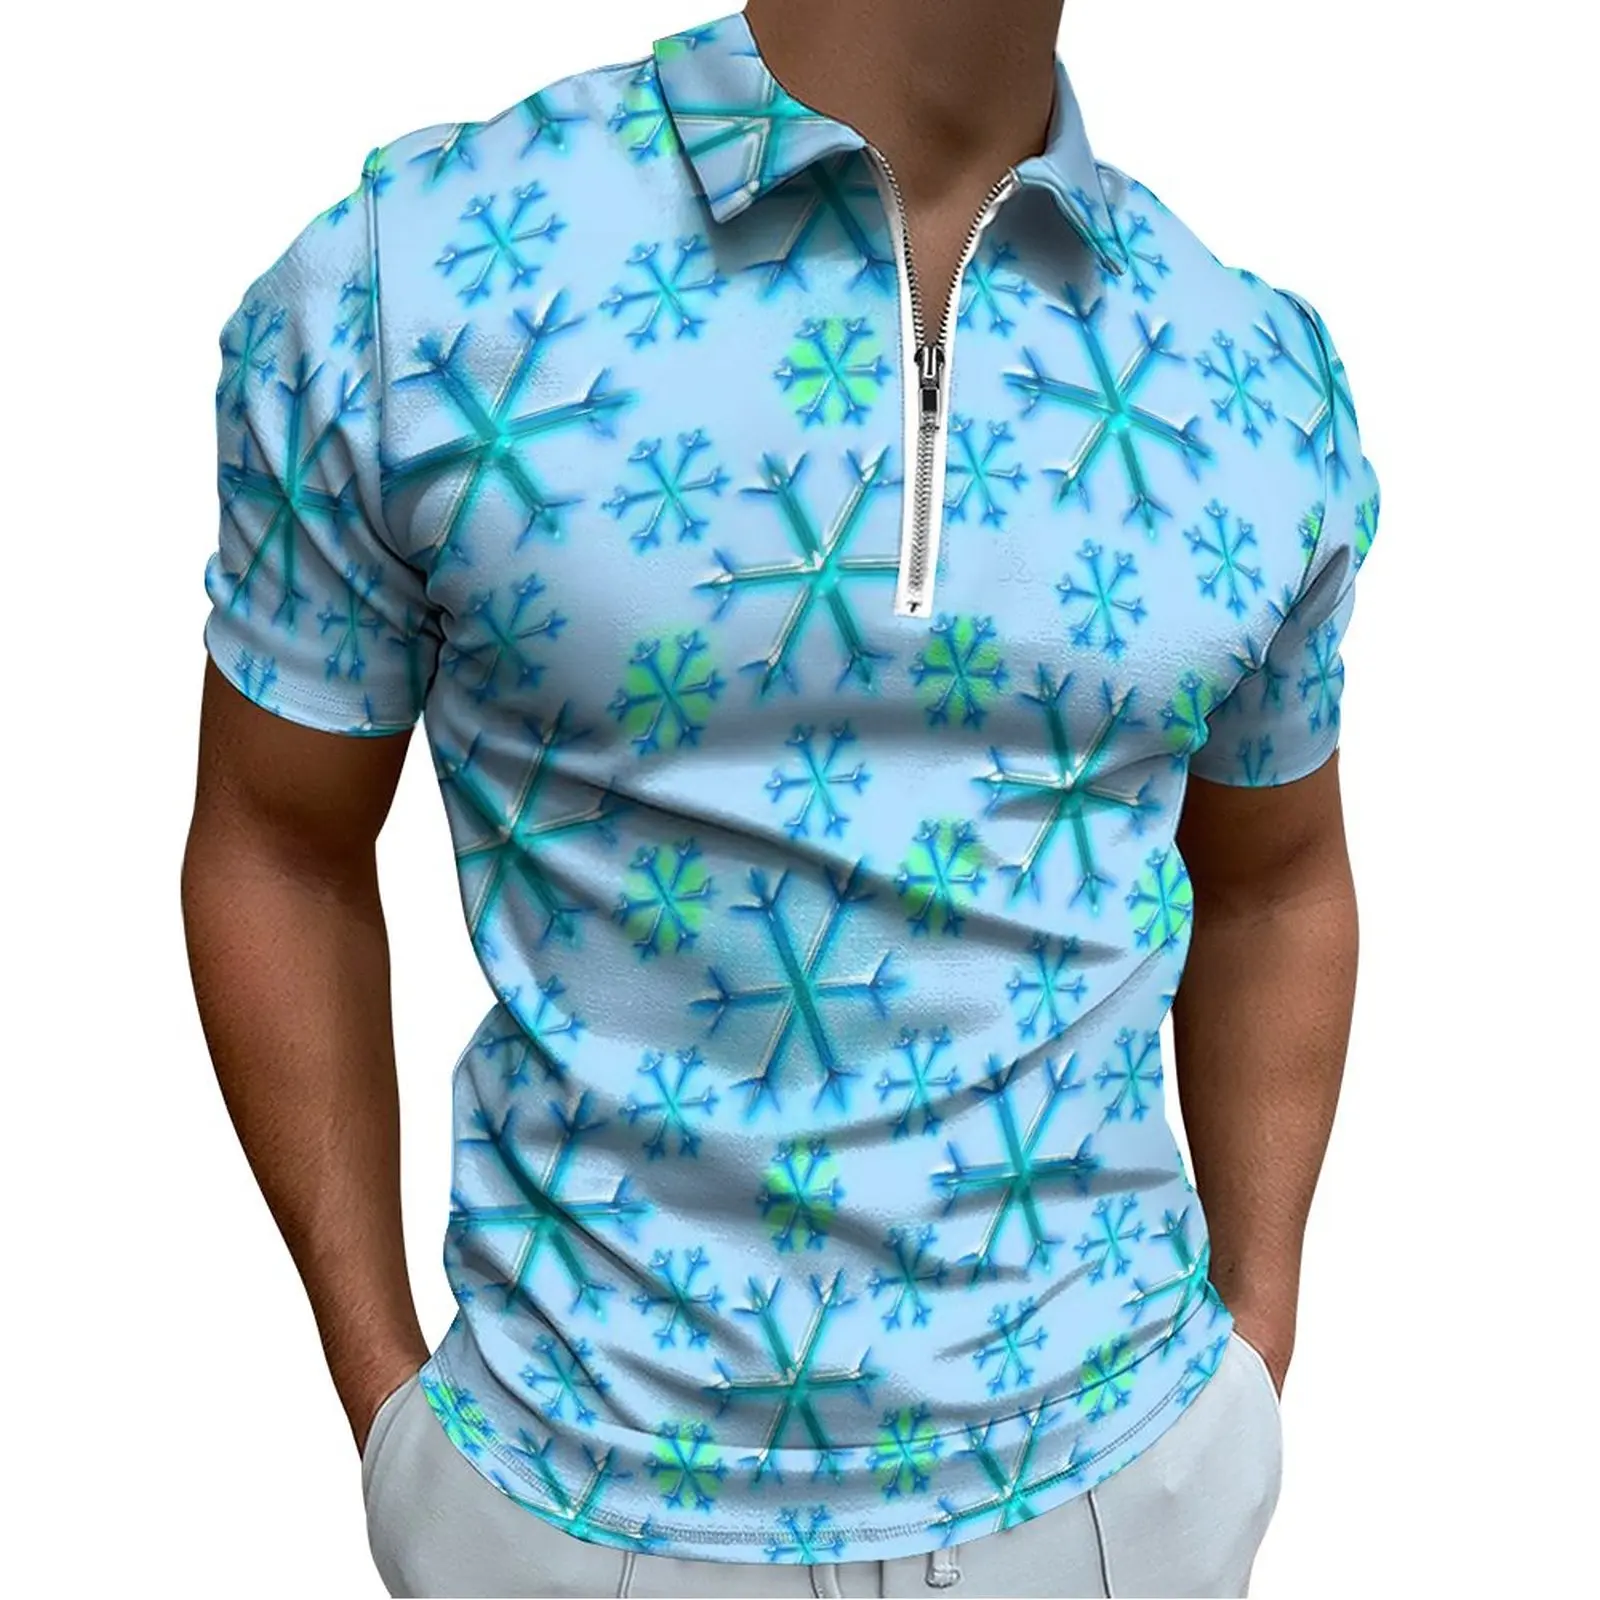 

Рубашка-поло мужская с принтом снежинок, Повседневная футболка на молнии, с коротким рукавом, с графическим принтом, в стиле оверсайз, голубая и белая